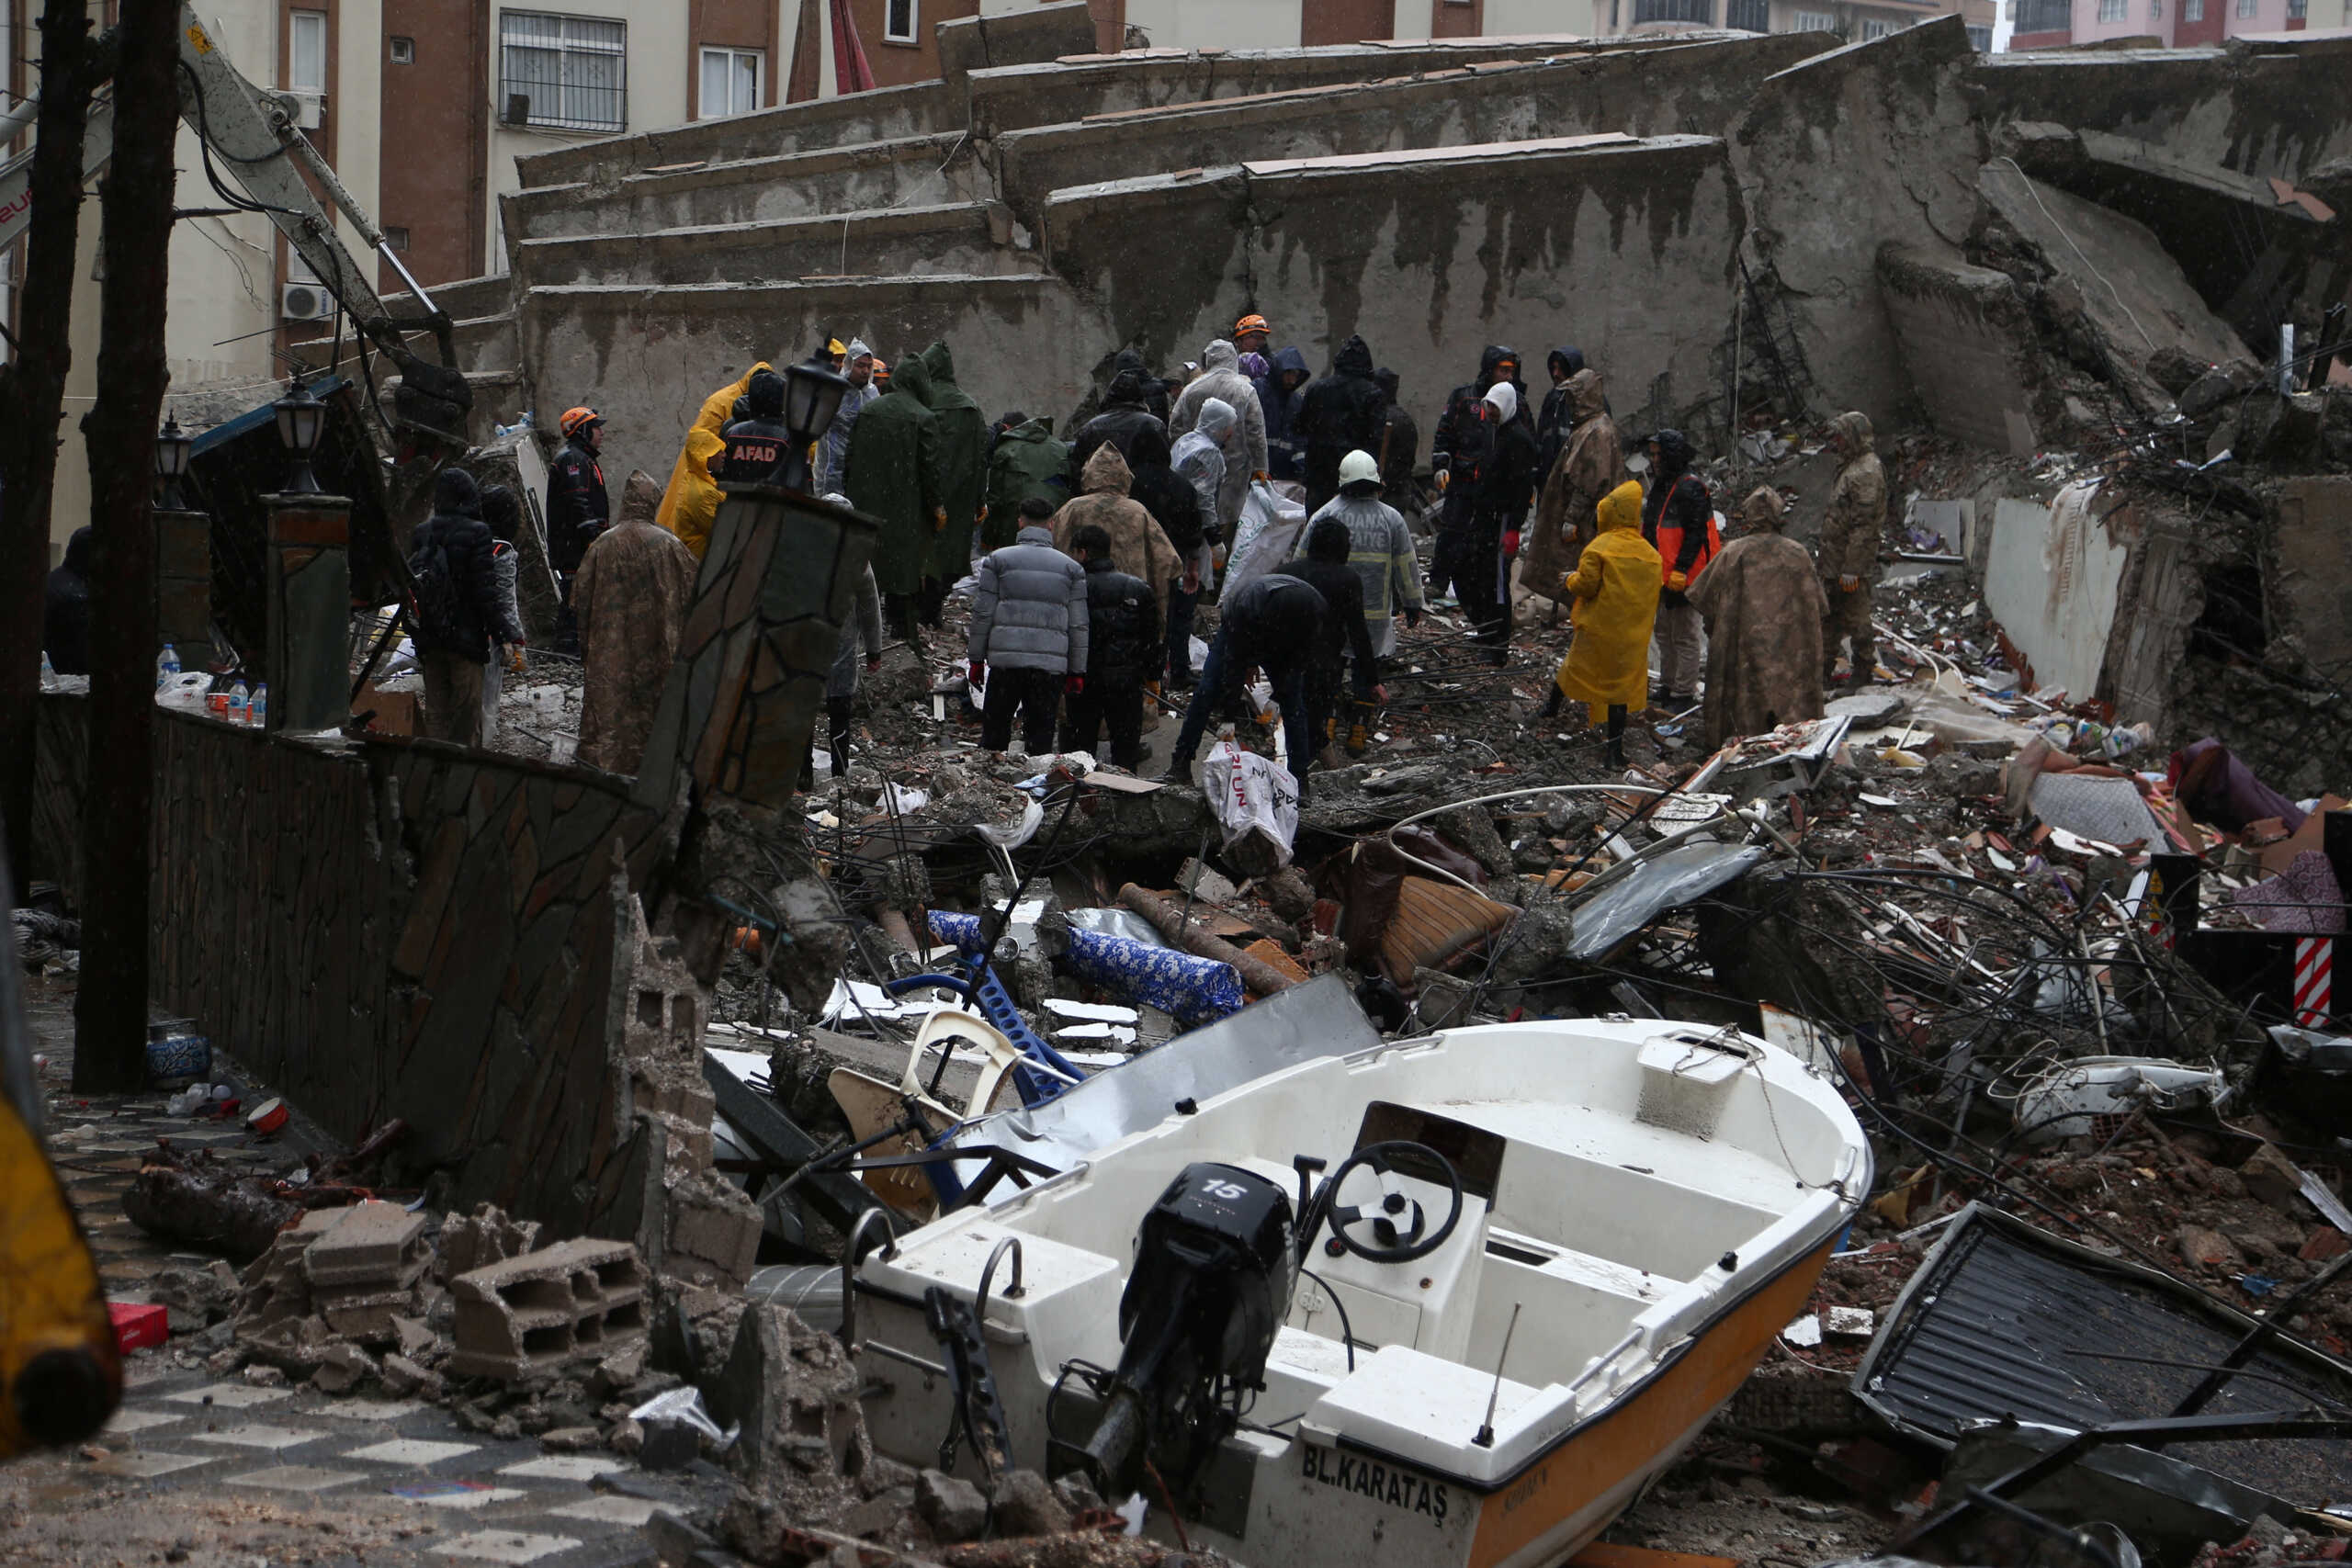 Σεισμός στην Τουρκία: «Δύσκολες συνθήκες, δεν υπάρχει συντονισμός» λέει ο Λέκκας